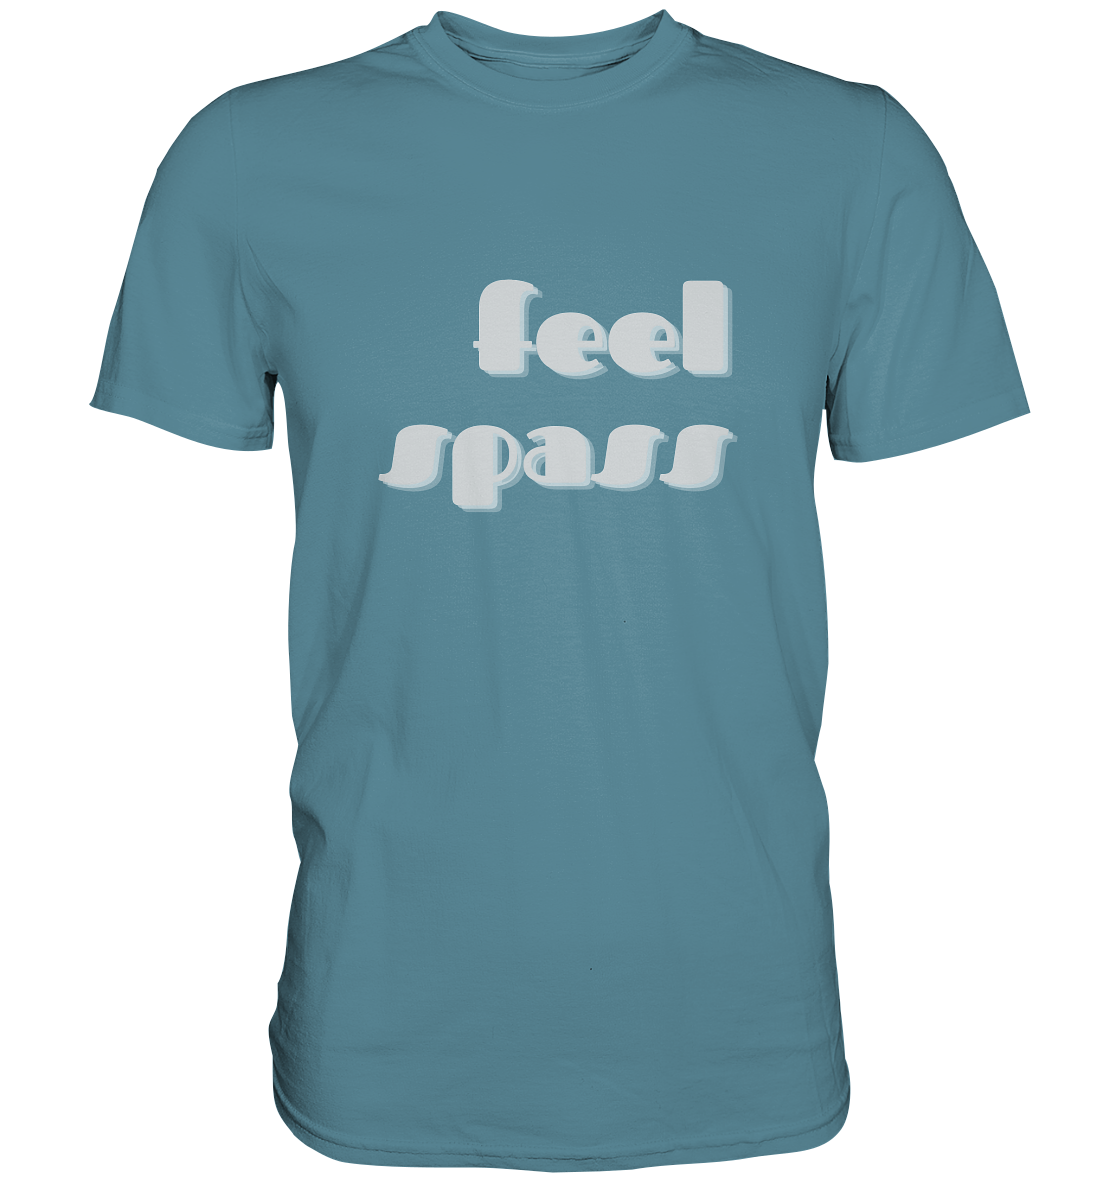 T-Shirt Herren, Rundhals, mit Aufdruck "Feel Spass", hell blau